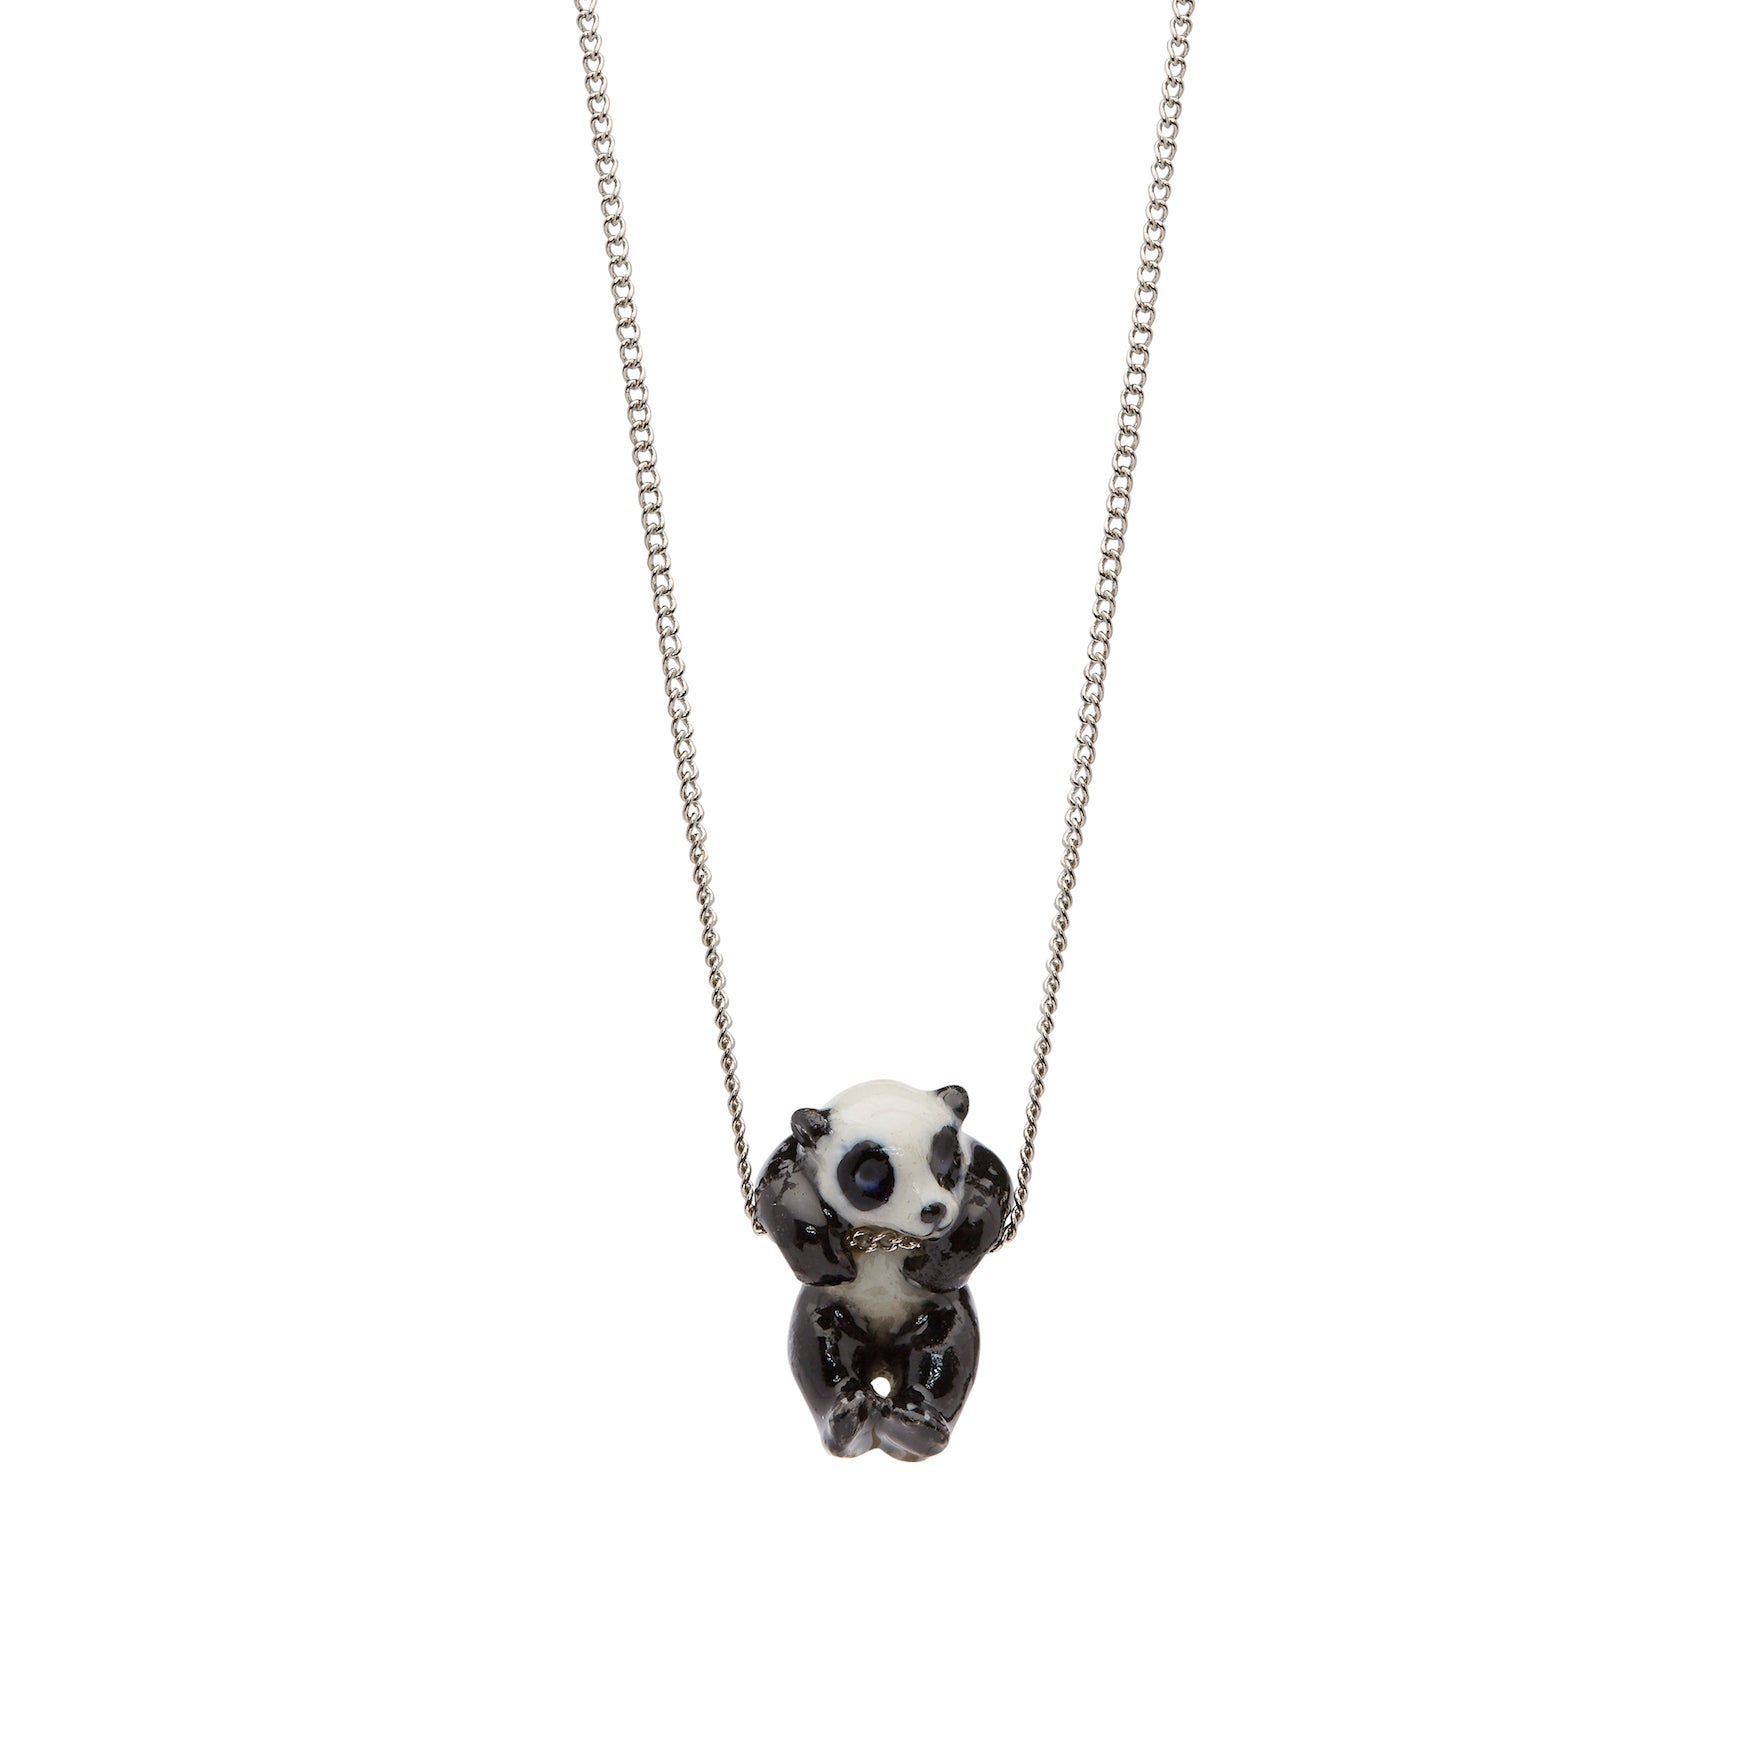 Tiny Hanging Panda Necklace